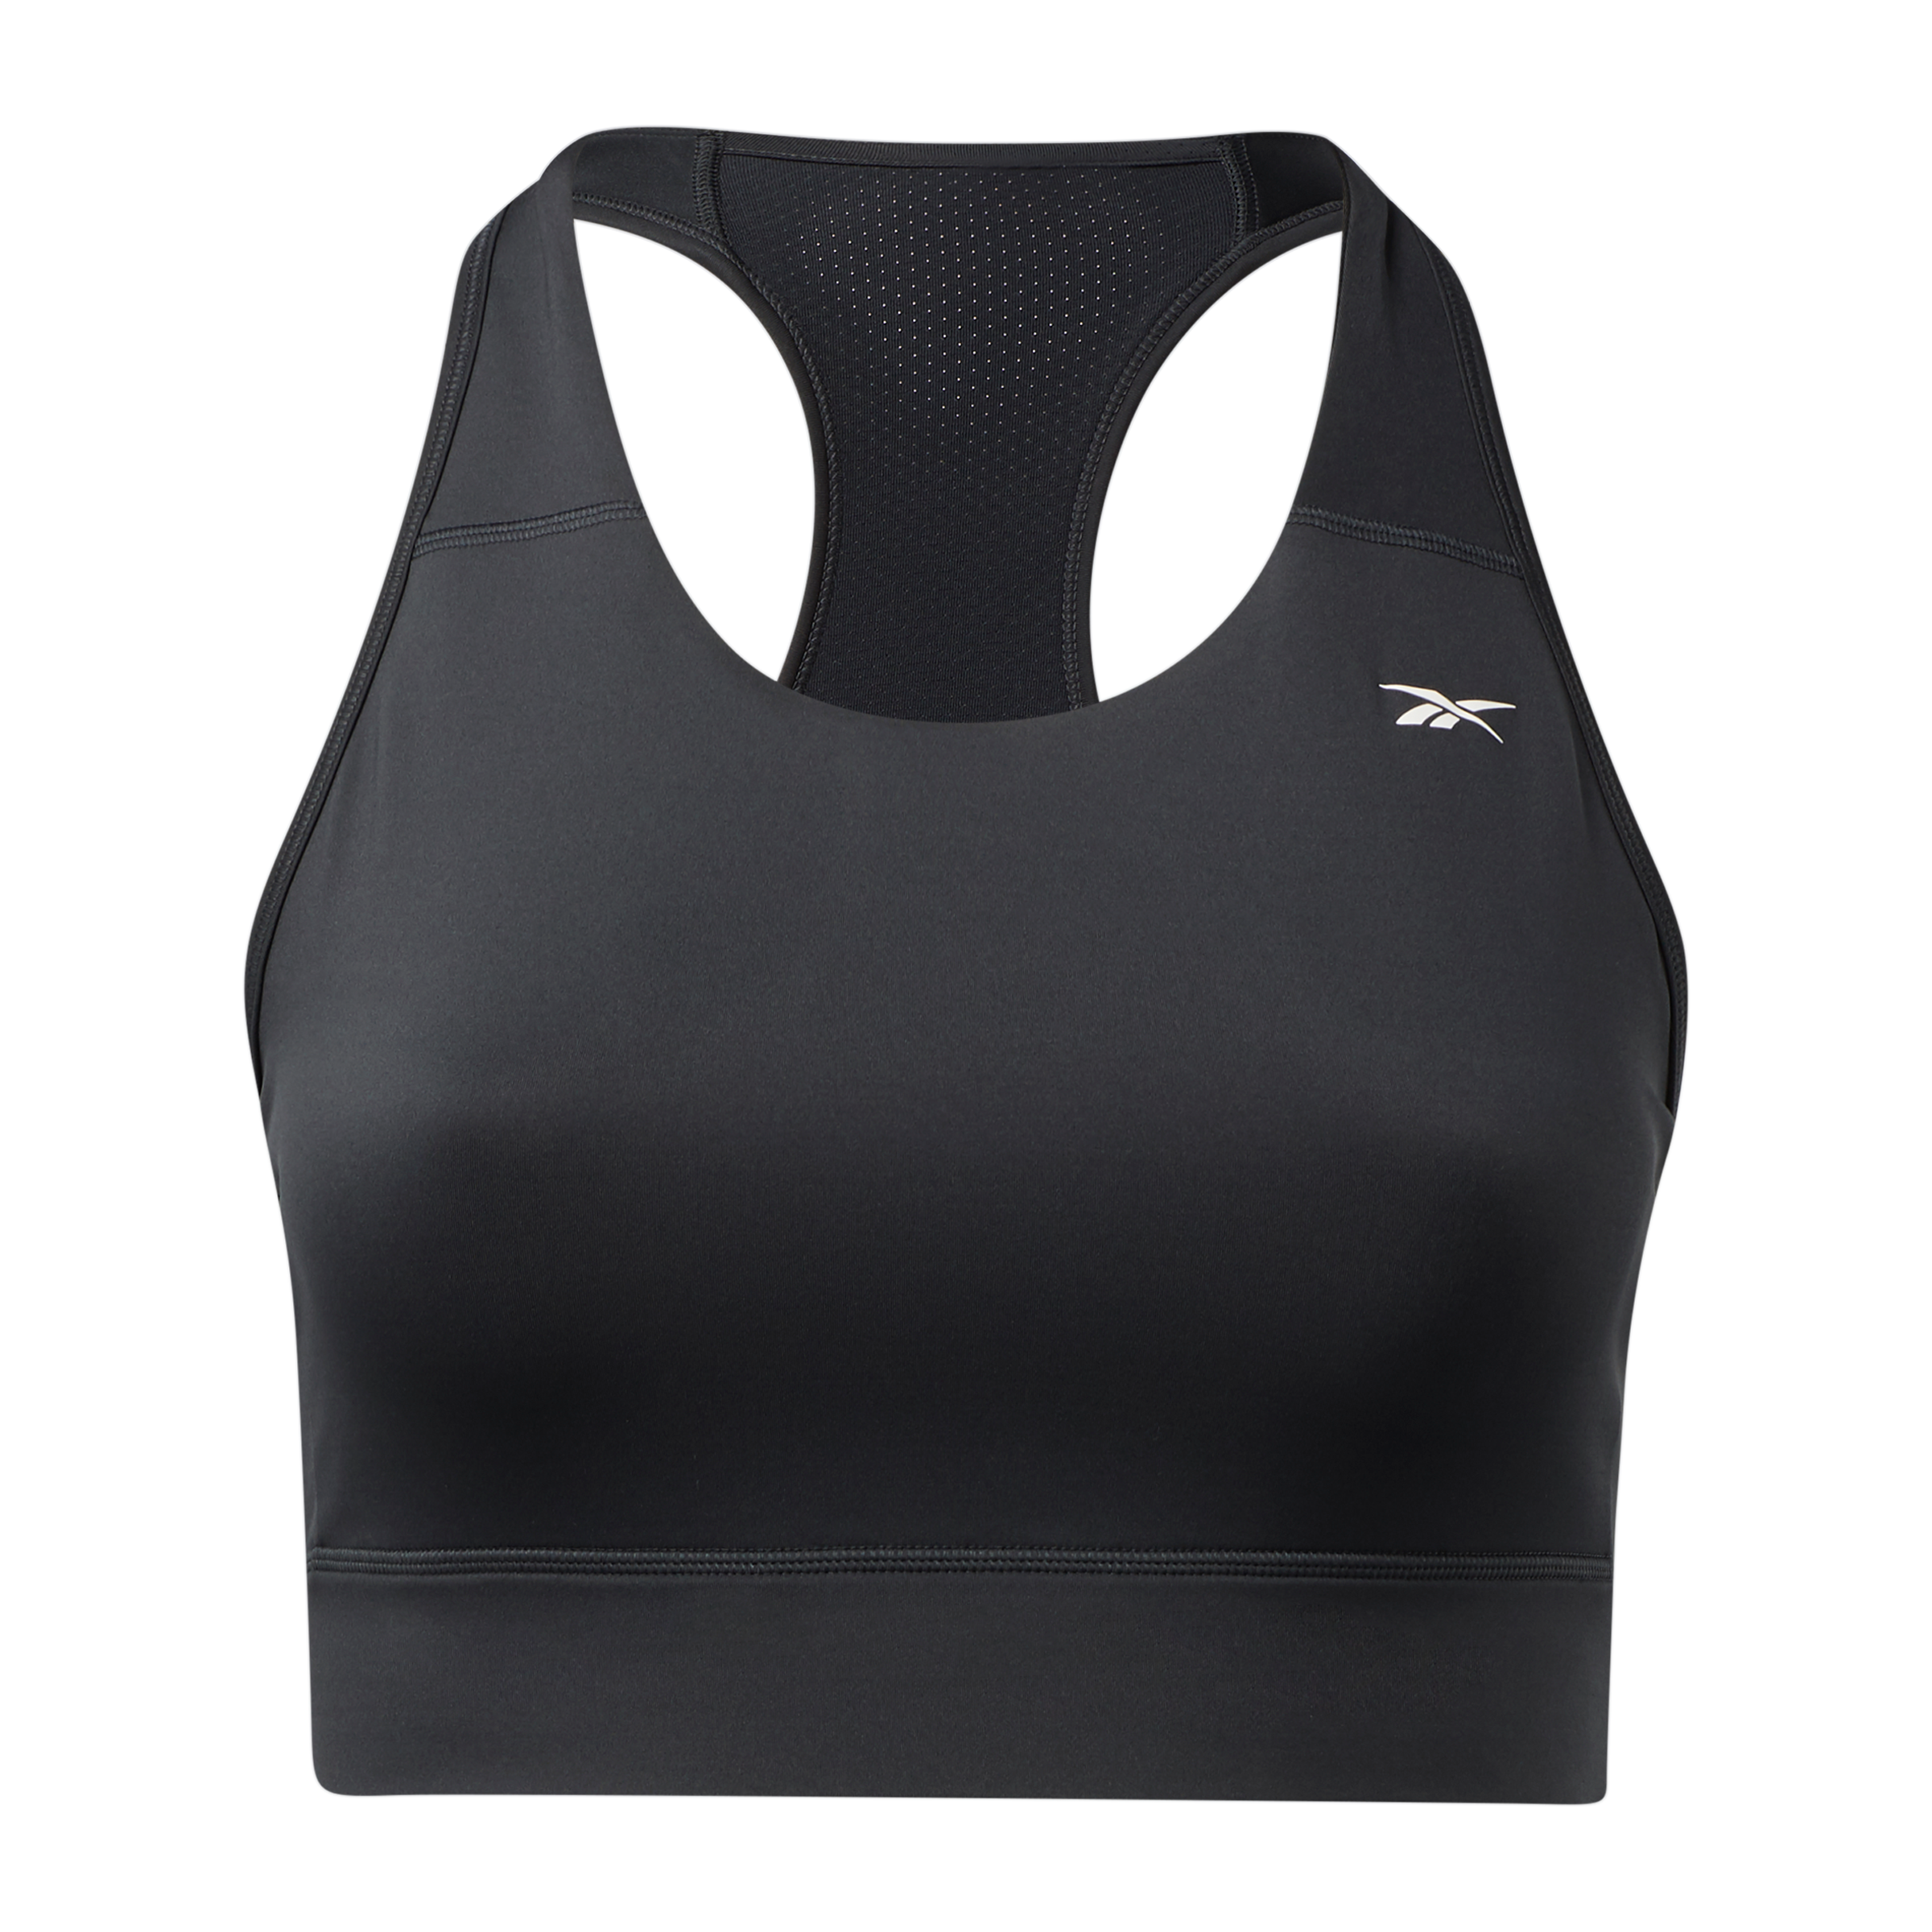 CMX Sports Bra Women’s Size S/M Racerback Stretch Striped Black